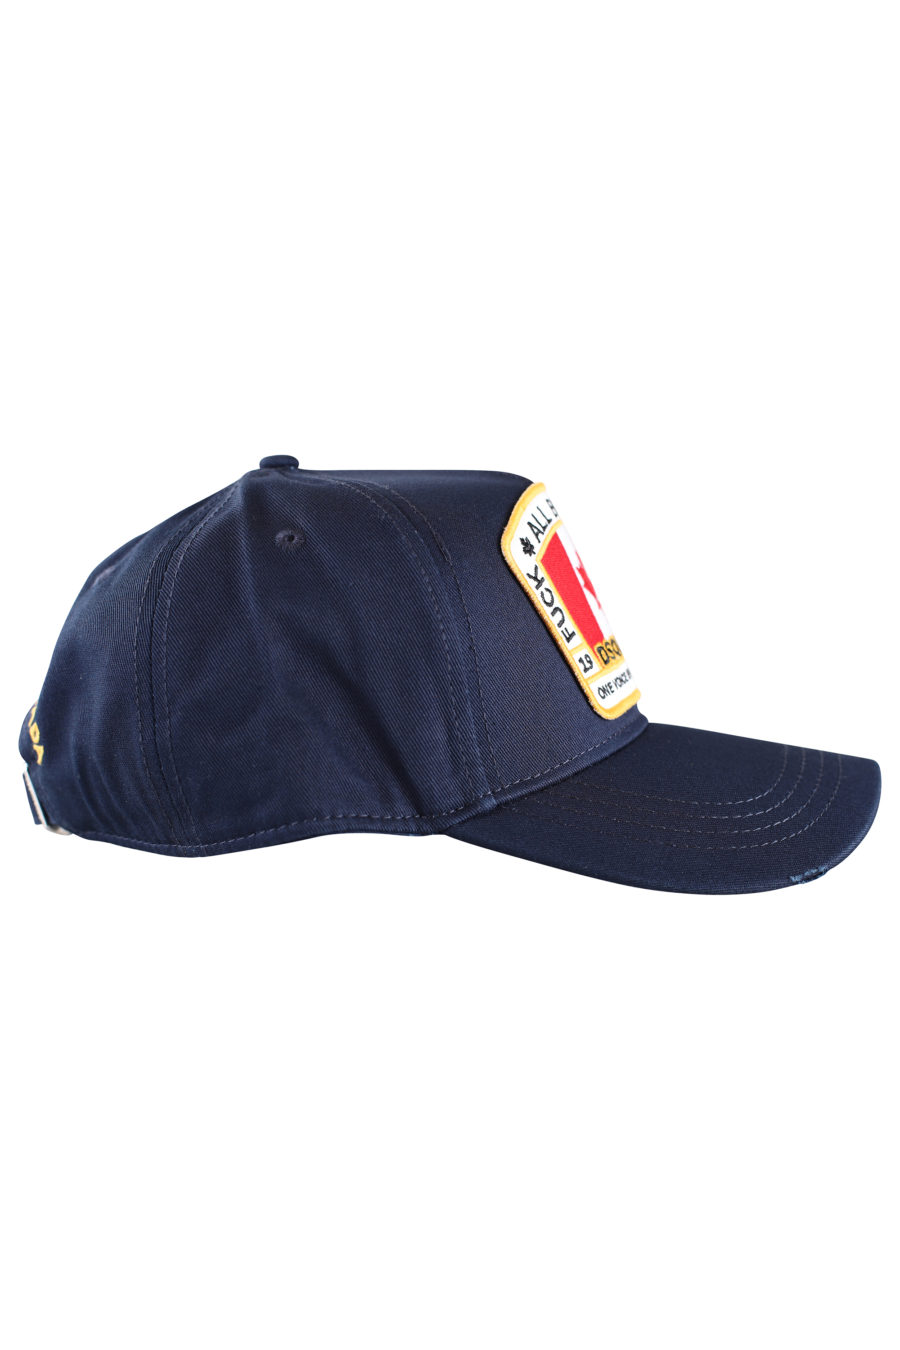 Blaue Mütze mit Aufnäher mit kanadischer Flagge - IMG 9979